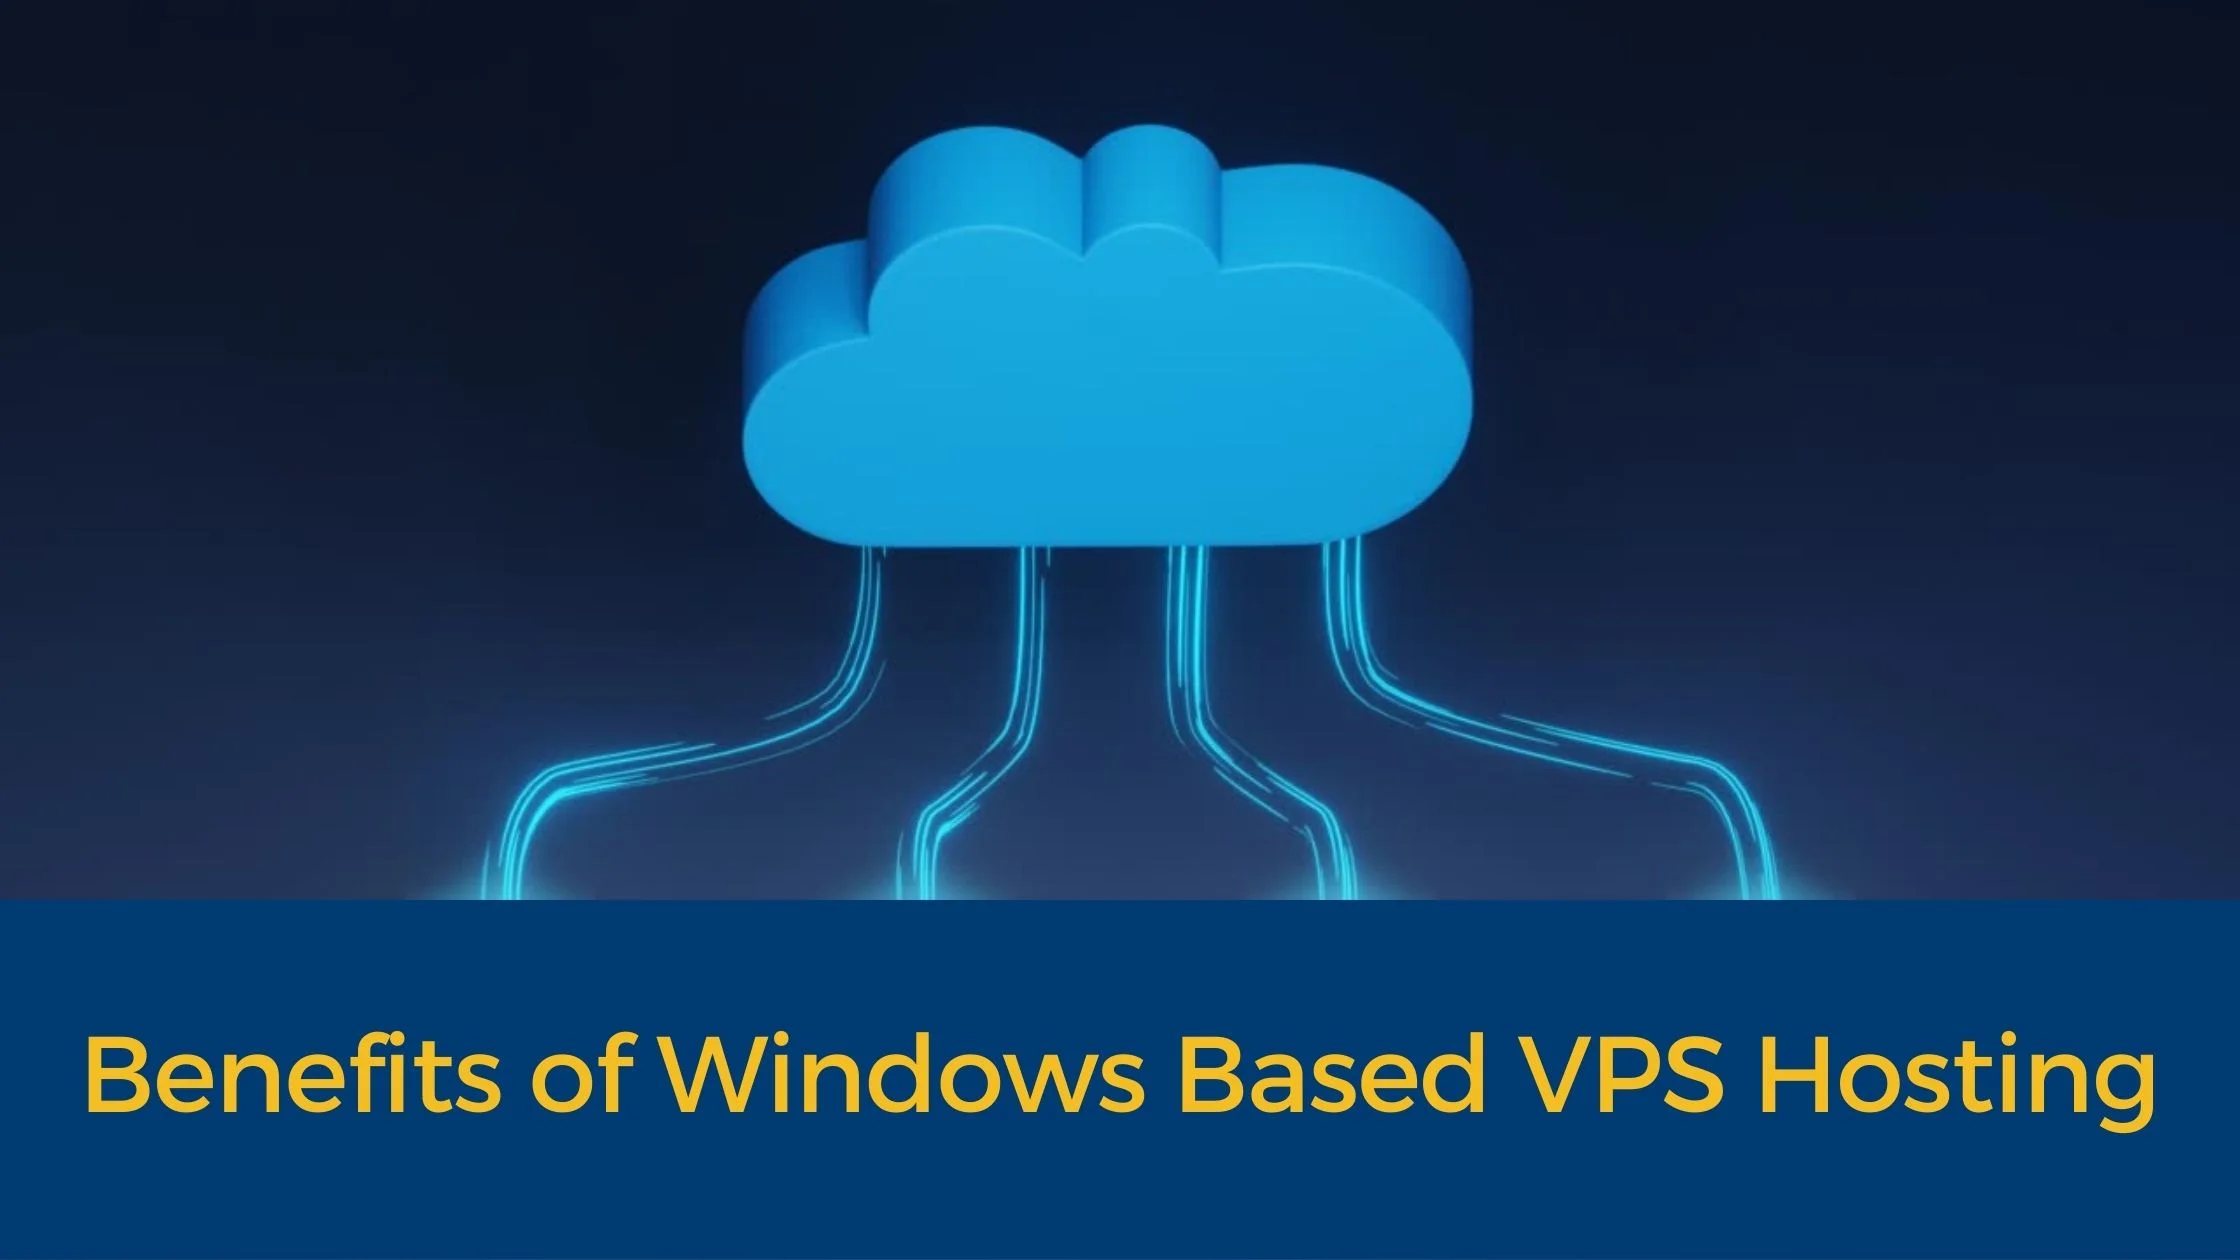 اقرأ المزيد عن المقالة الفوائد الحقيقية لاستضافة VPS المعتمدة على Windows